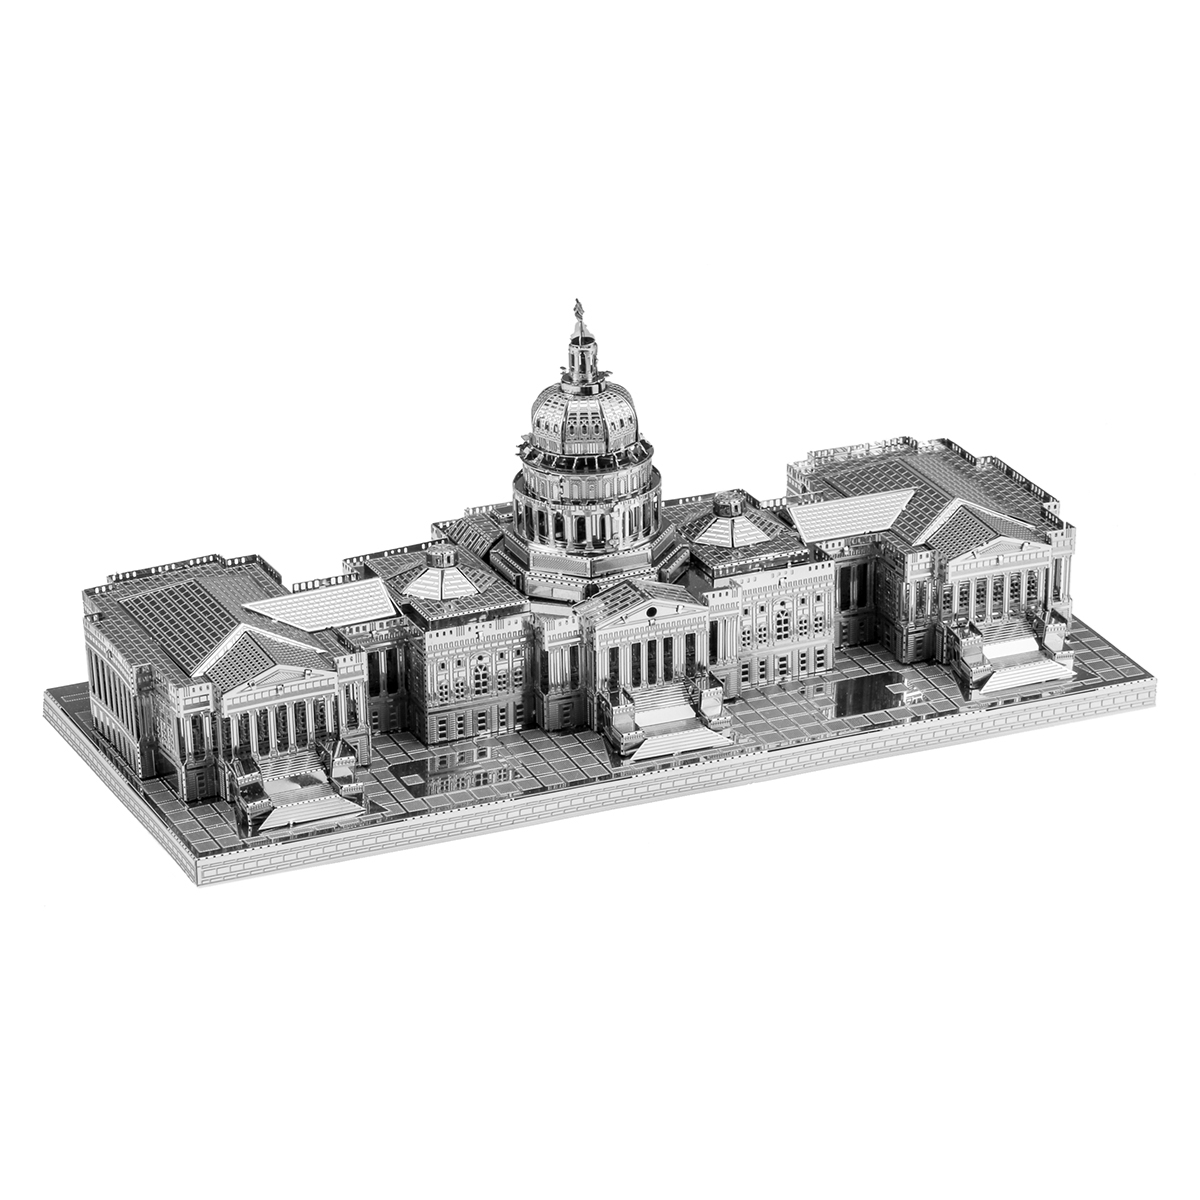 Fascinations Metal Earth 3D Metal Model US Capitol Building 